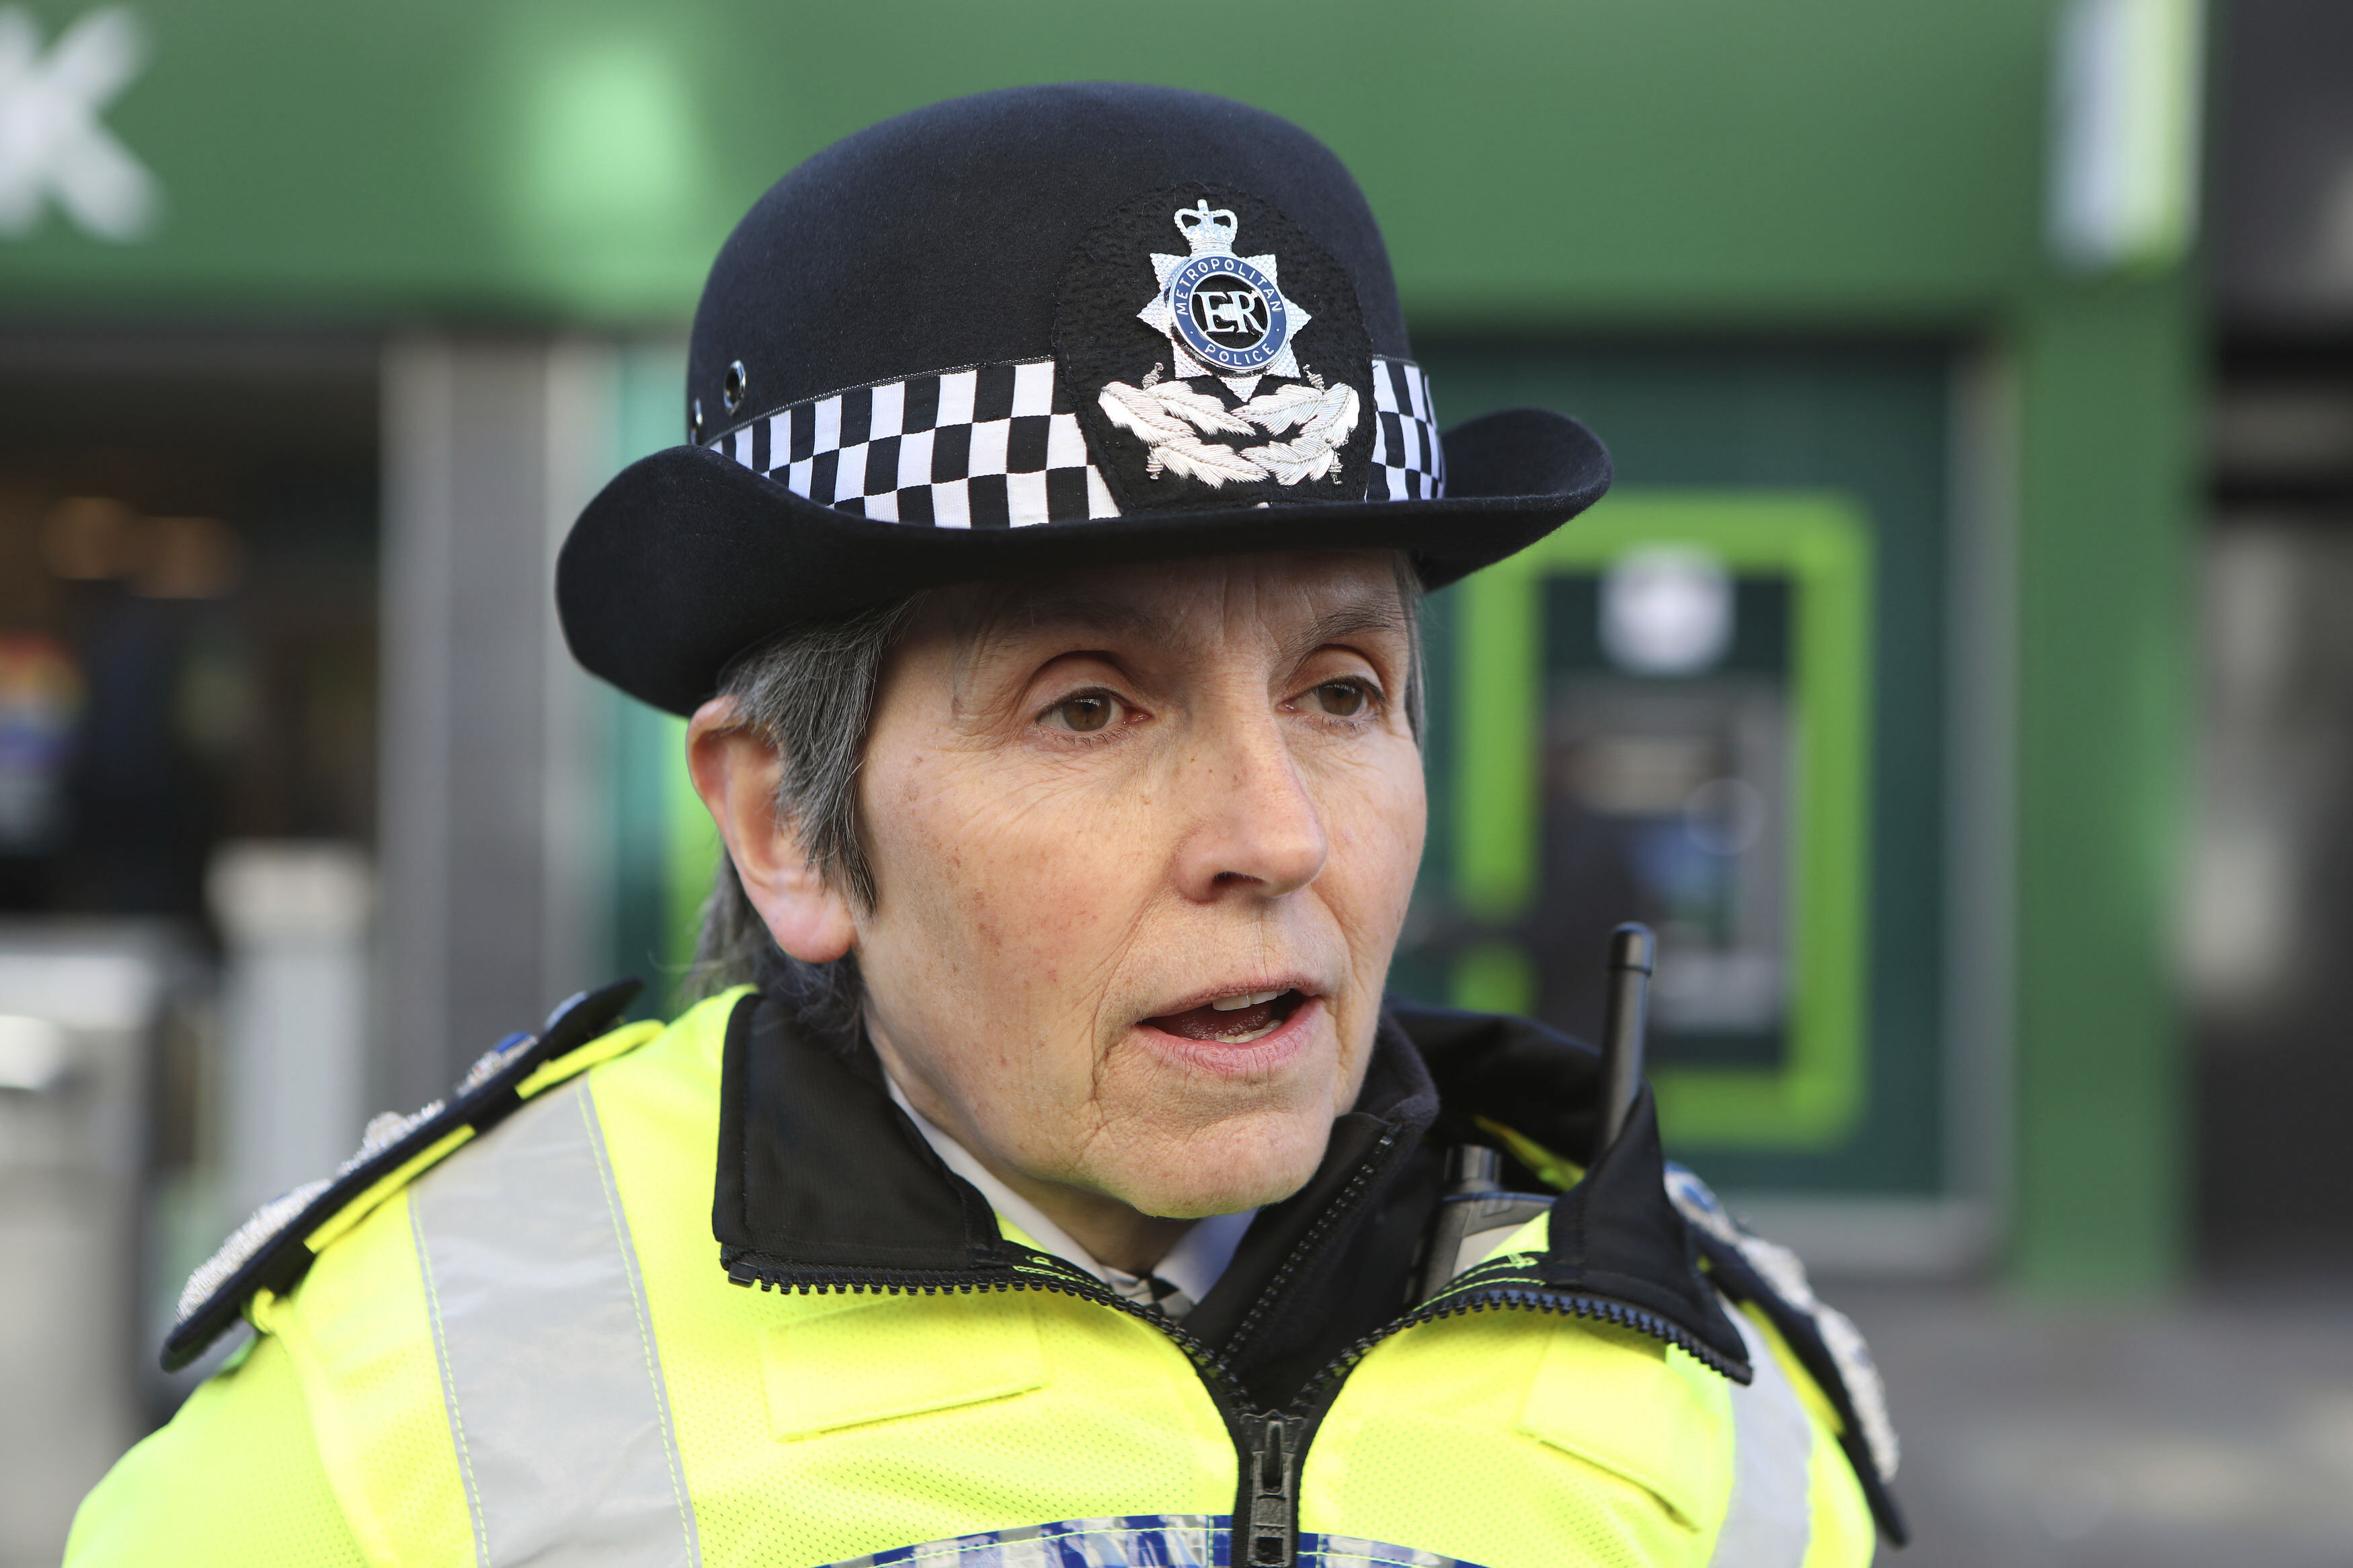 London-politiets øverste leder, kommisjonær Cressida Dick tok avstand fra skildringen av korrupte politifolk i den populære serien og hadde behov for å presisere at korrupsjon på ingen måte var så utbredt i  britisk politi som i  «Line of Duty».